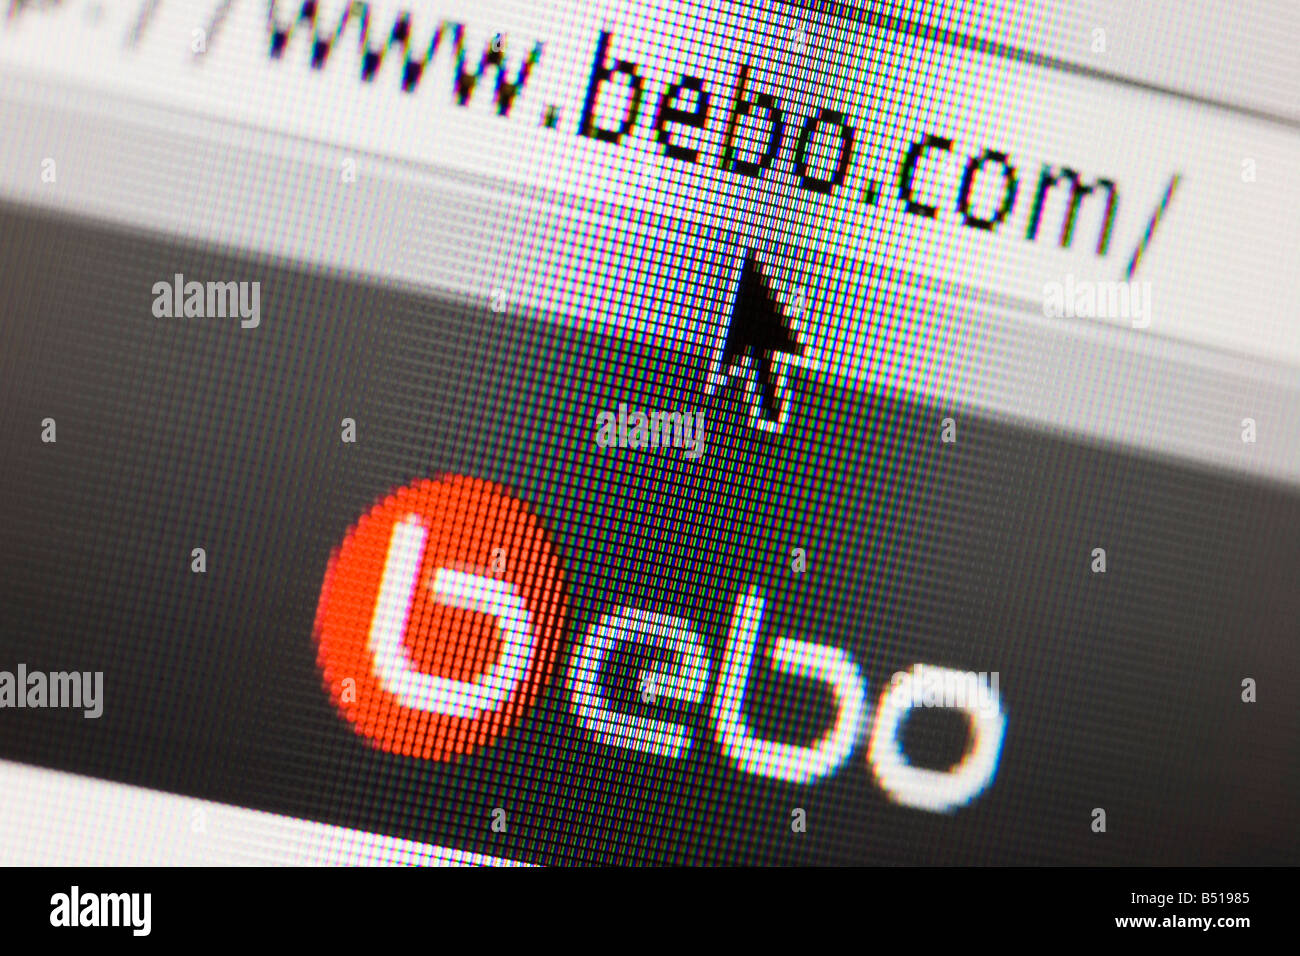 Réseaux sociaux site Bebo bebo www com Banque D'Images